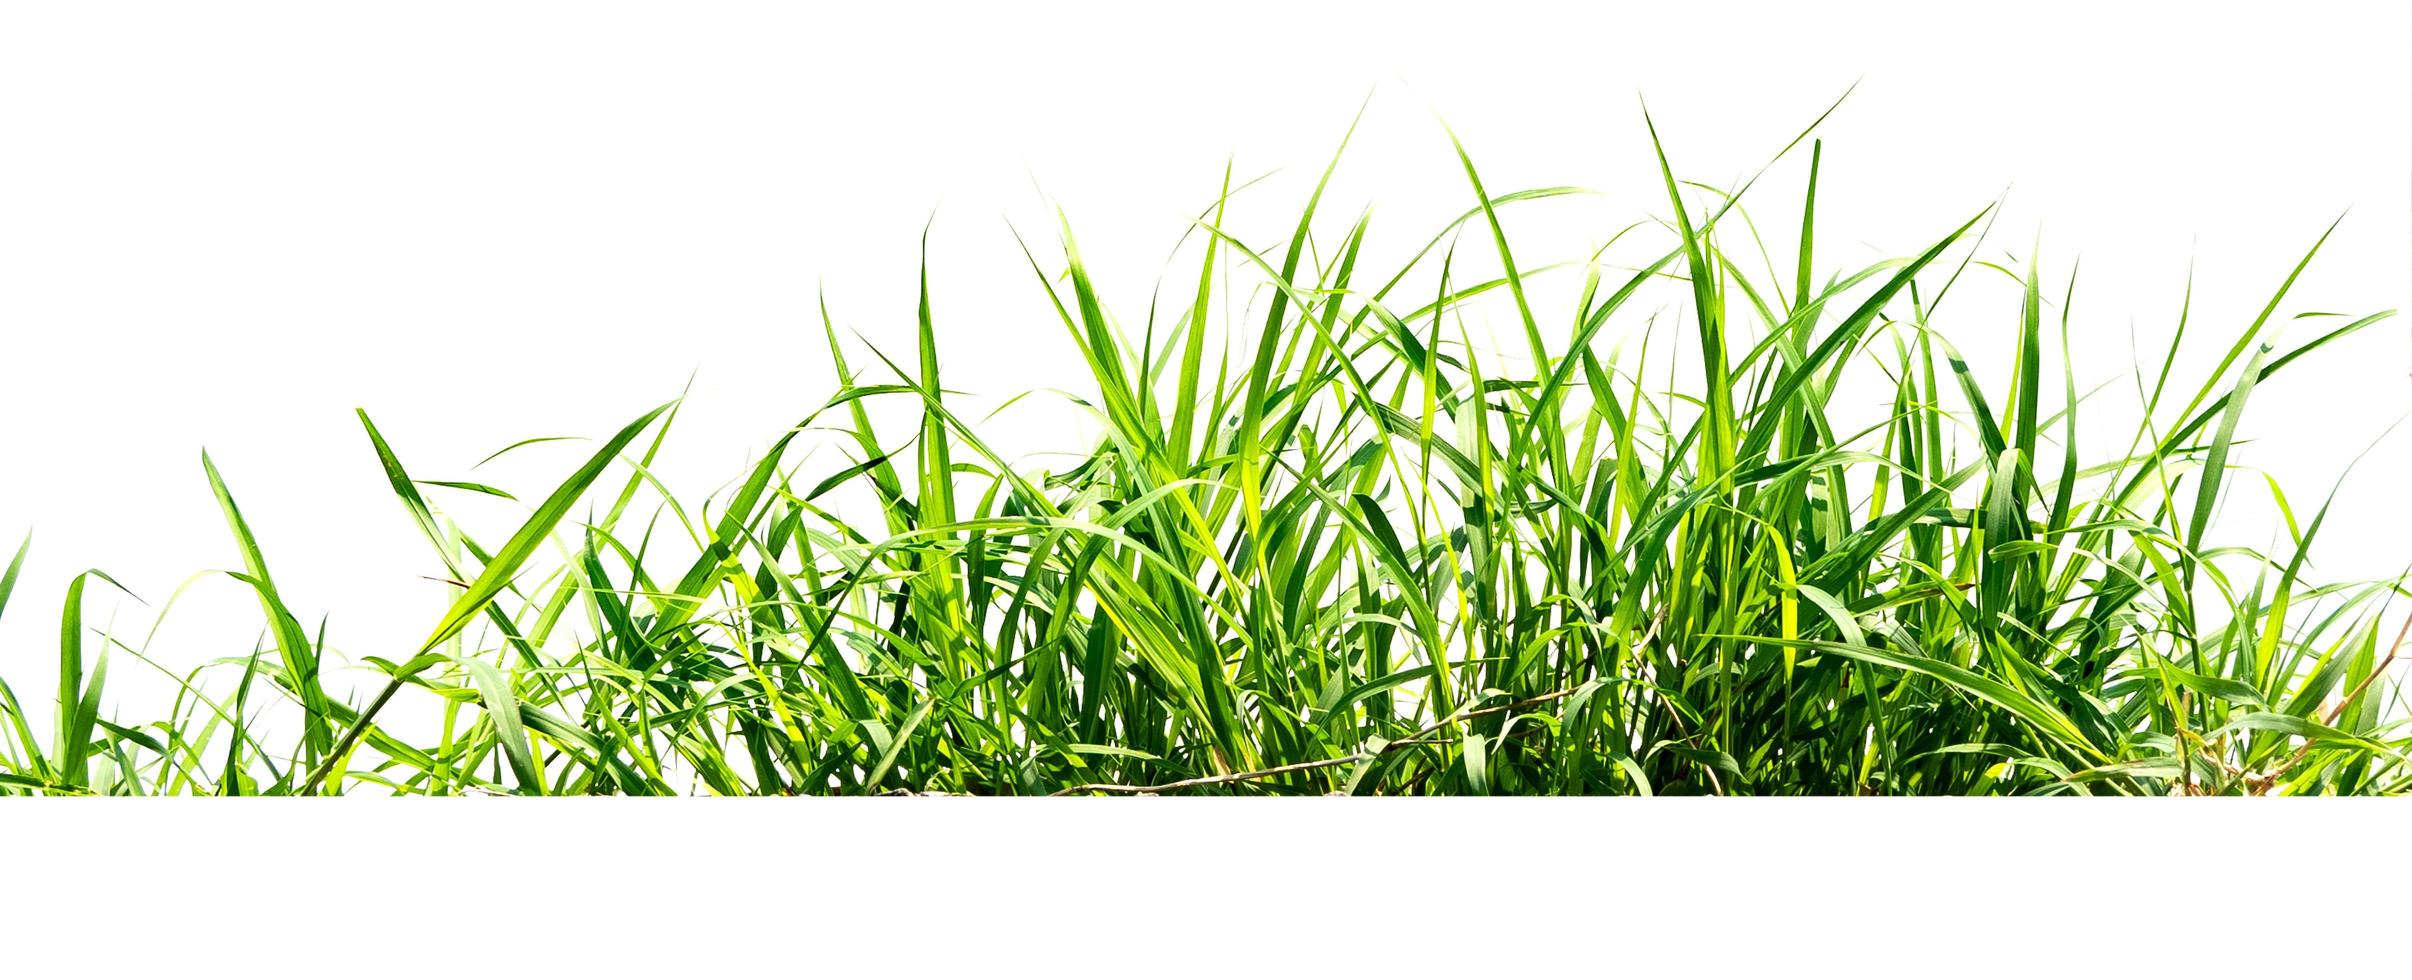 groen gras isoleren op witte achtergrond foto